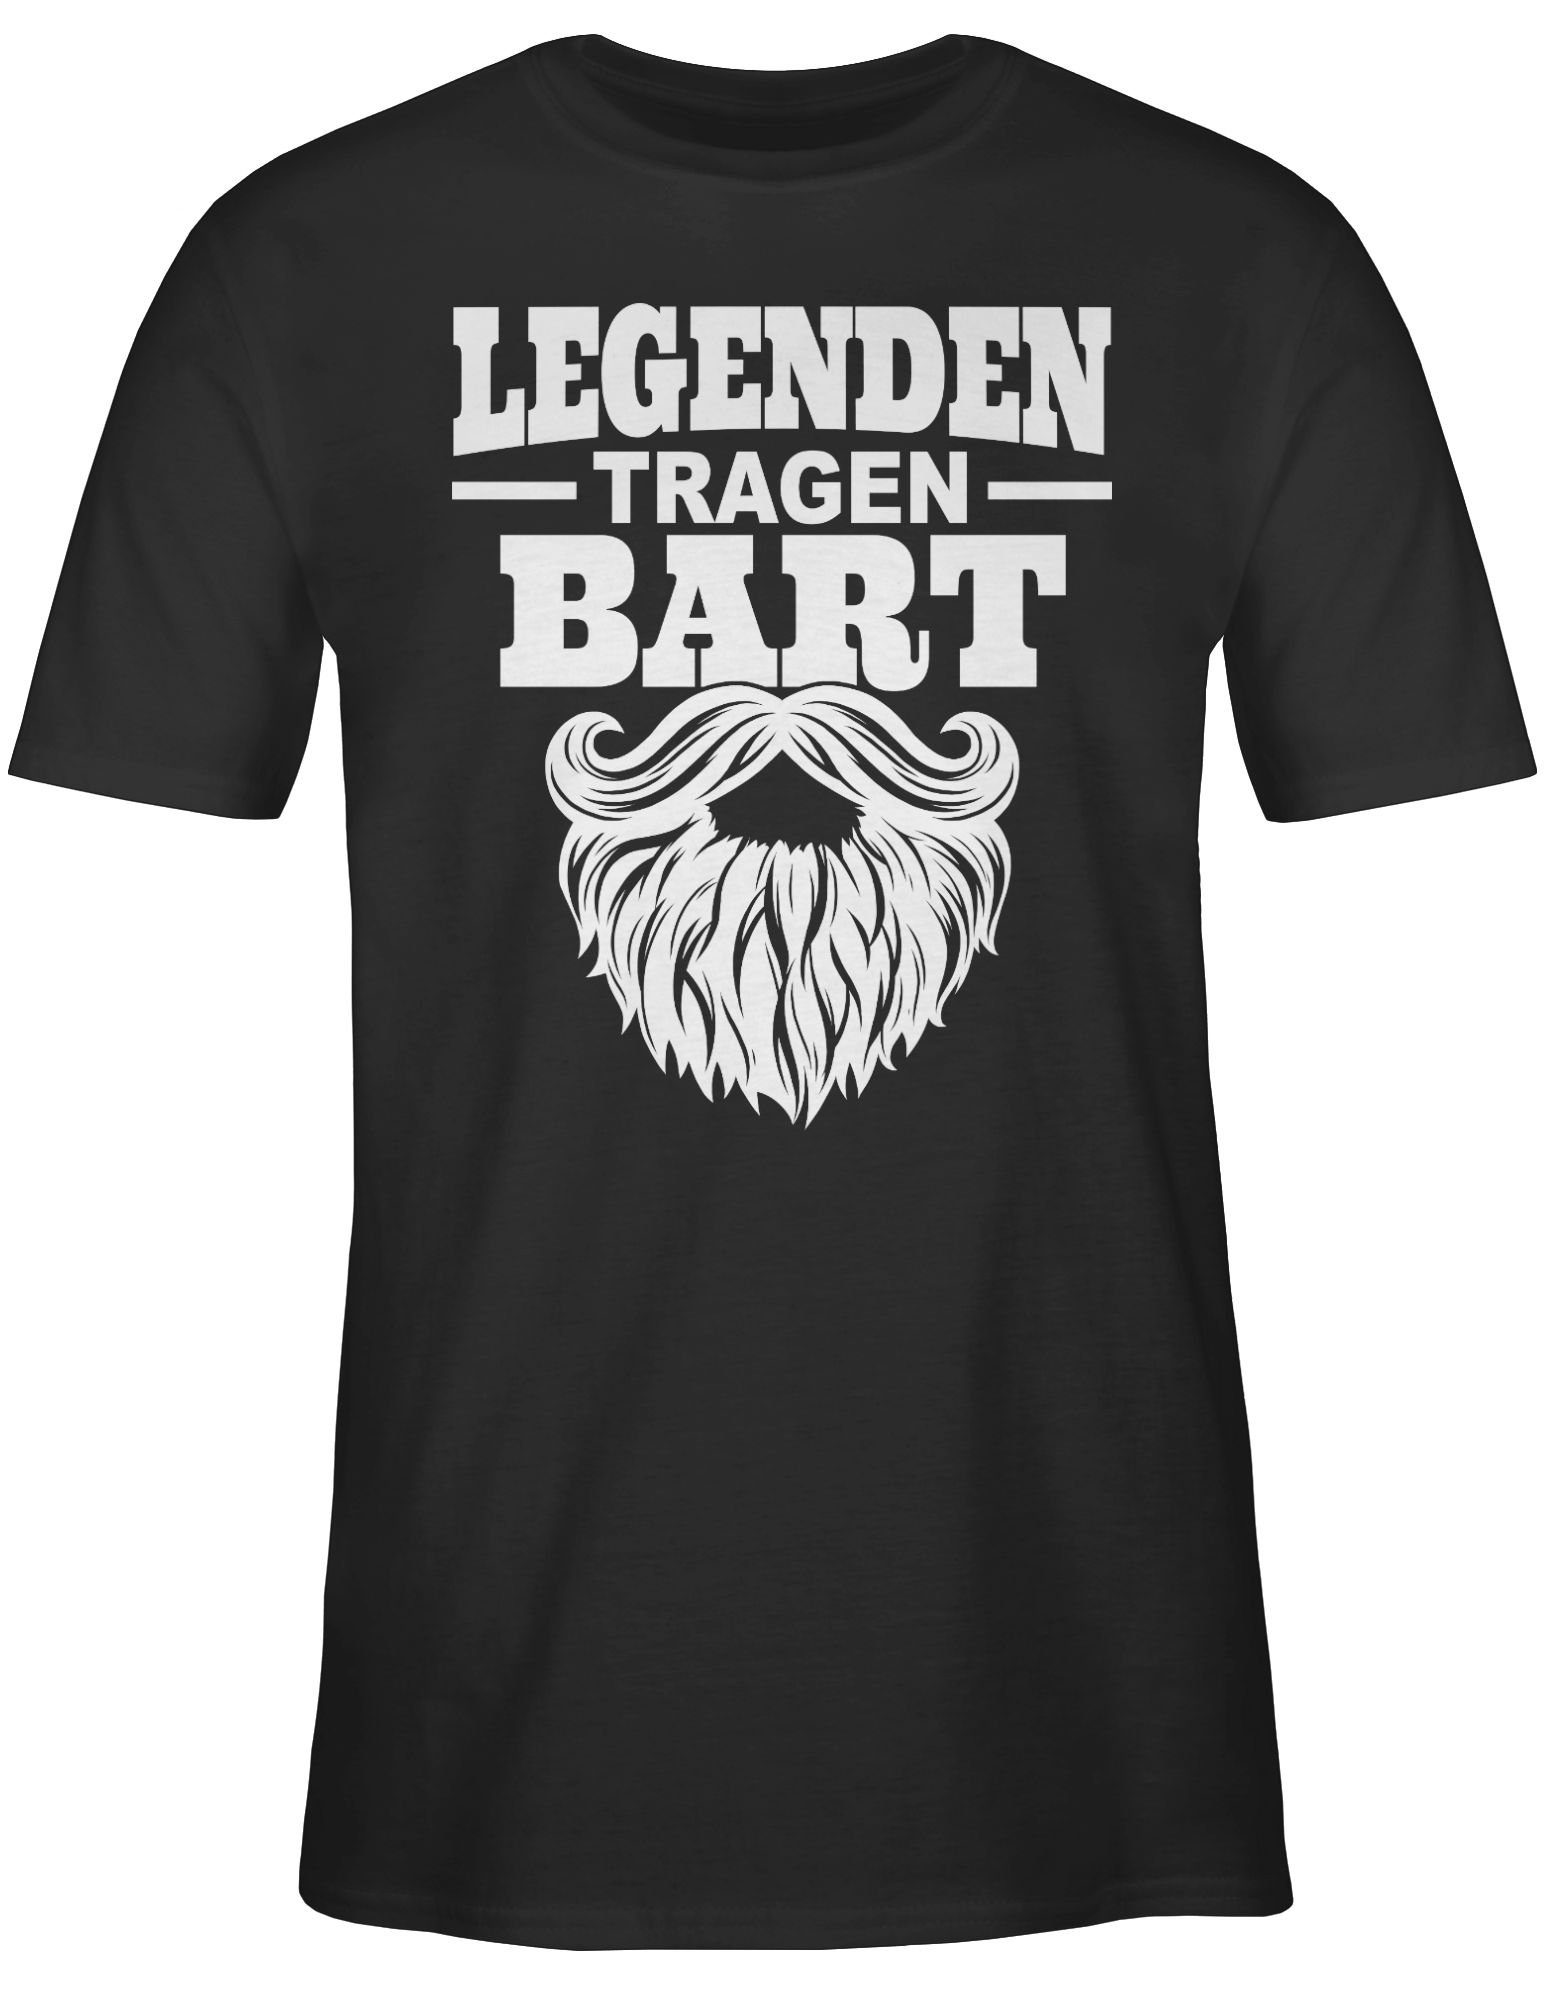 Shirtracer T-Shirt Sprüche weiß mit 01 Schwarz Statement tragen Bart Spruch Legenden